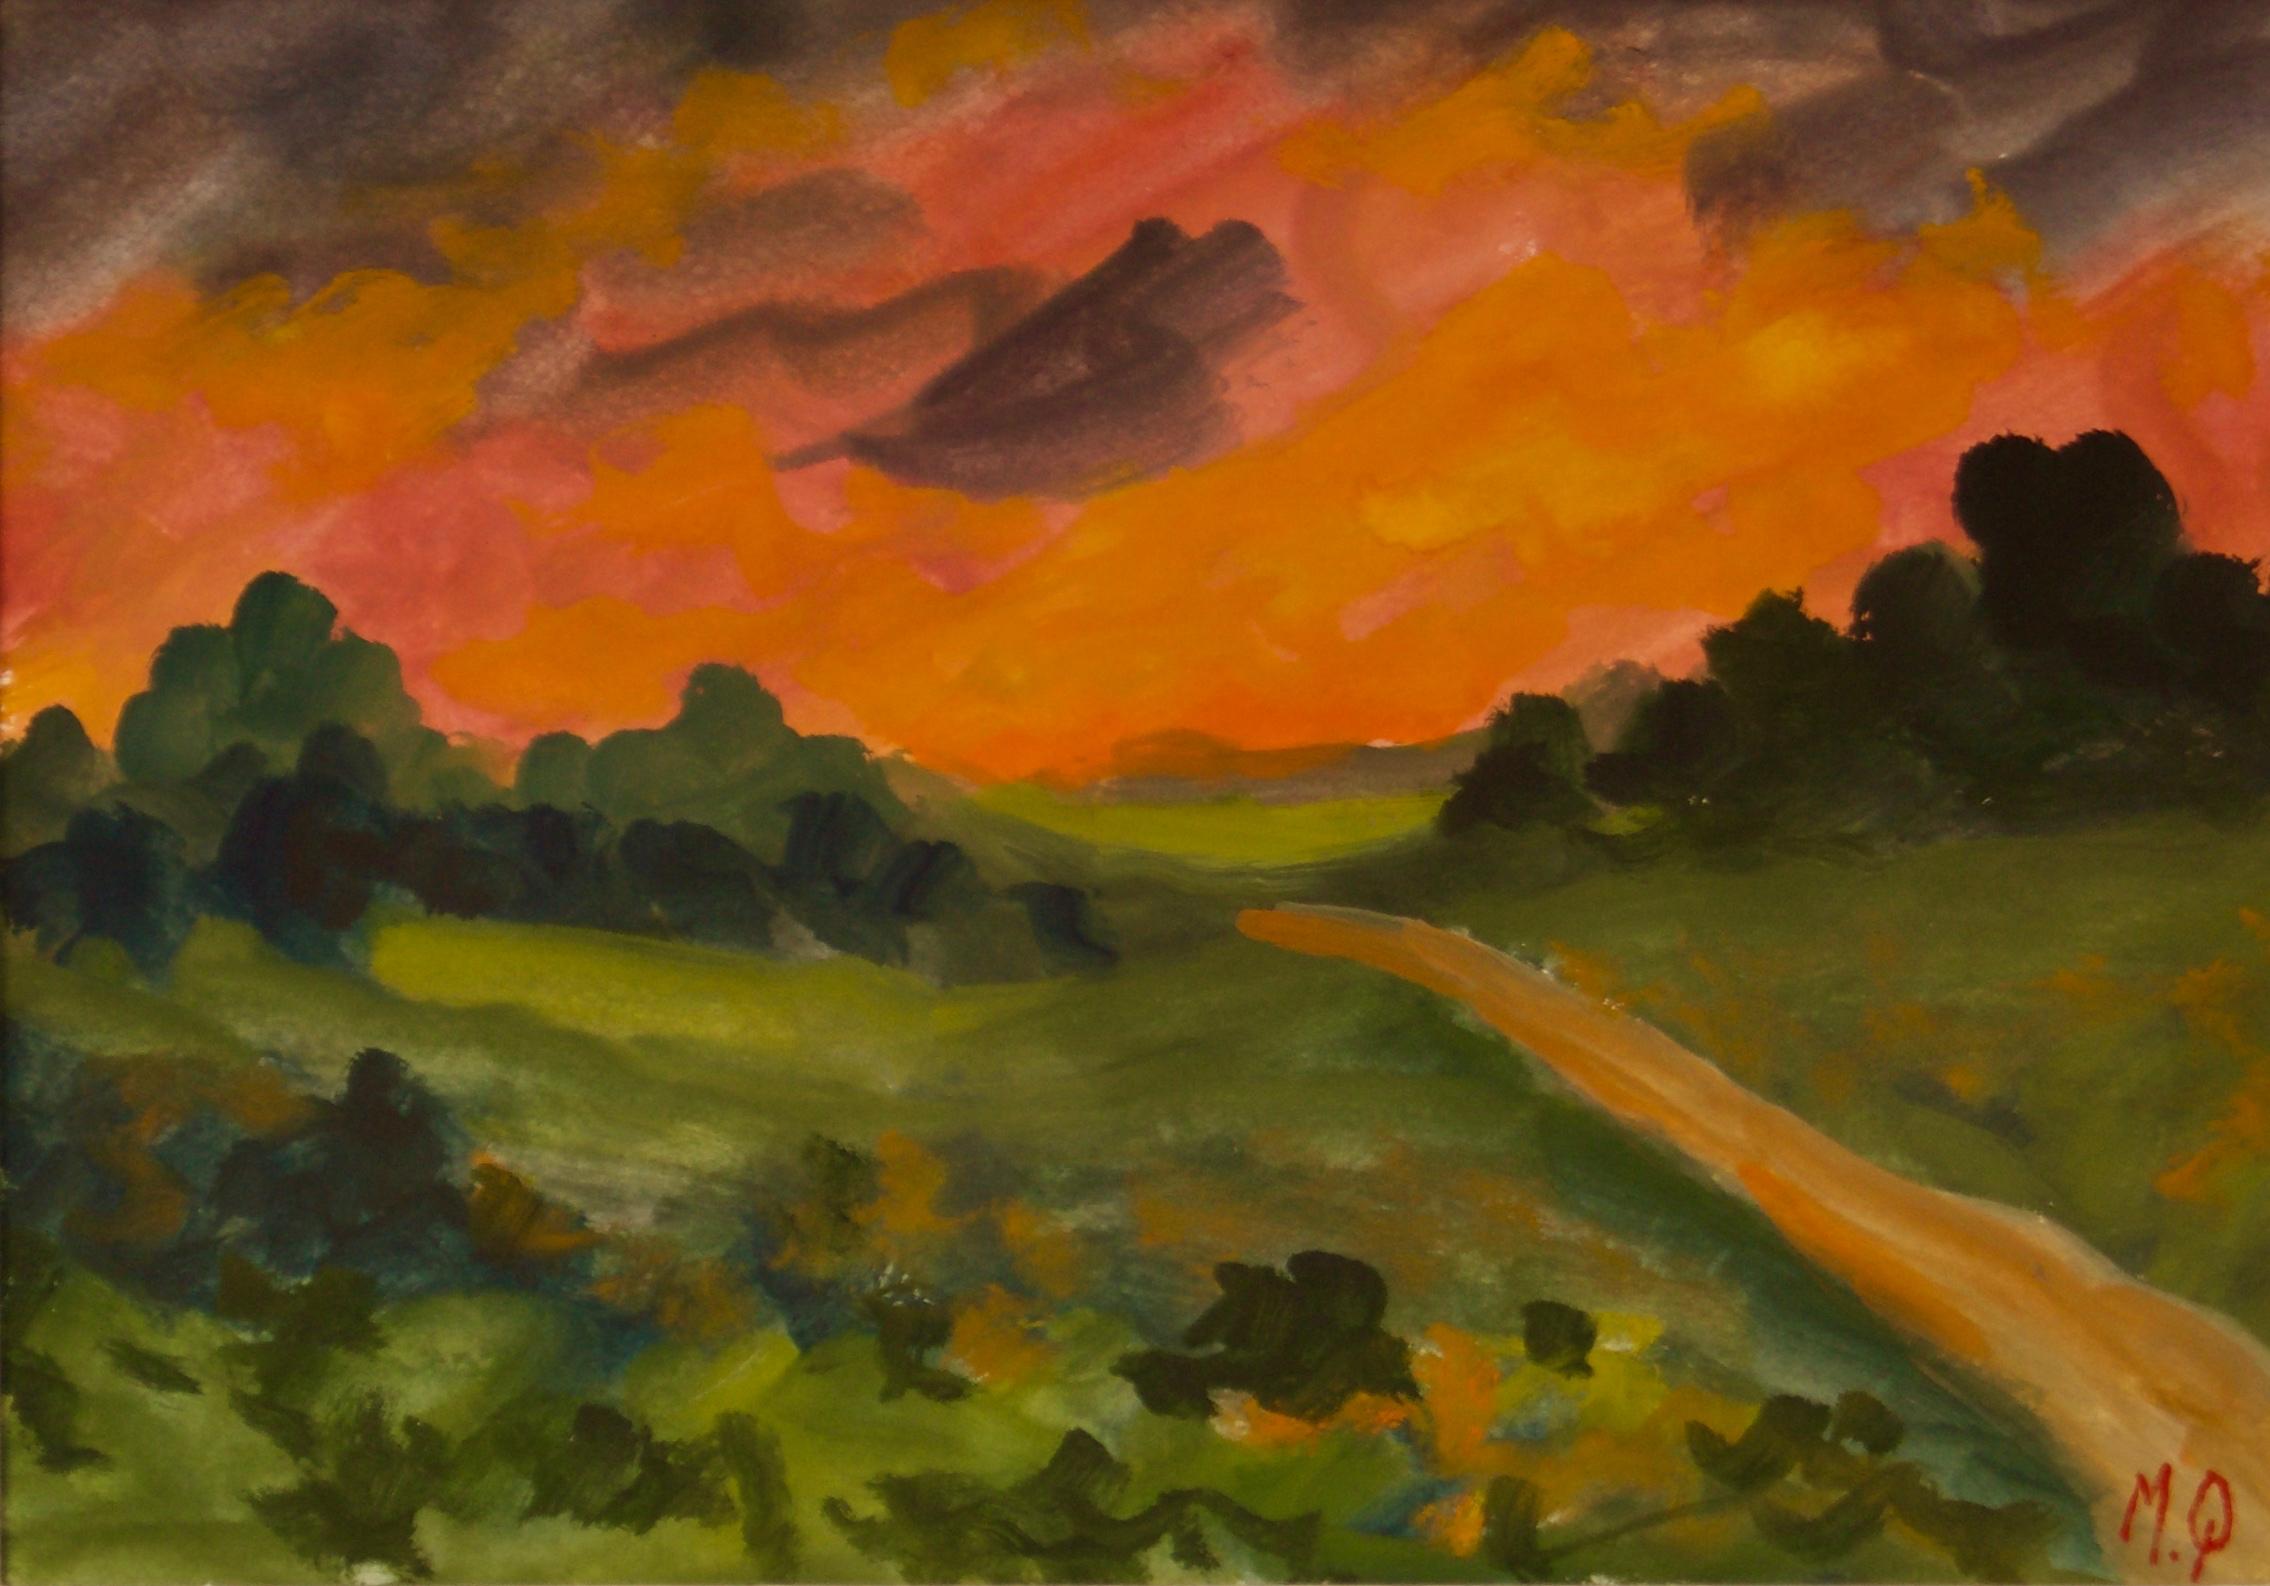 Un coucher de soleil à la campagne - Pièce impressionniste du début du 20e siècle de Michael Quirke